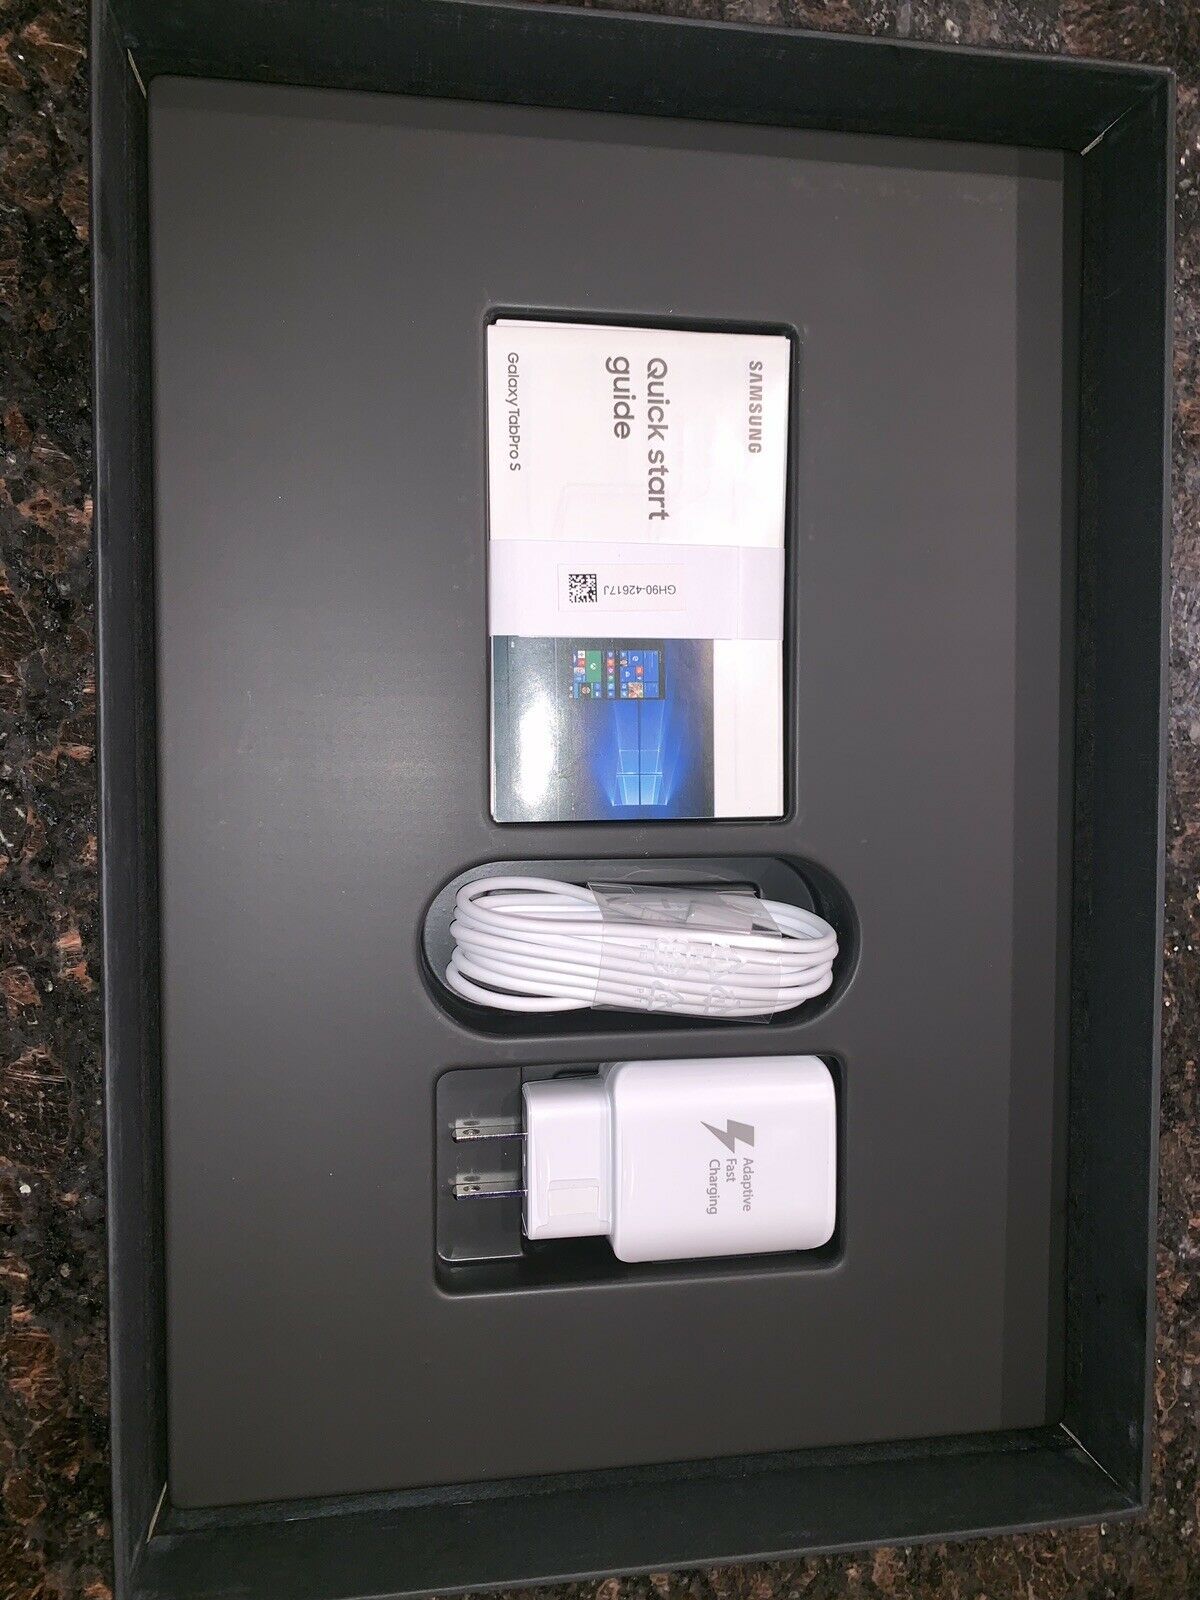 Samsung Galaxy TabPro S SM-W703 128GB